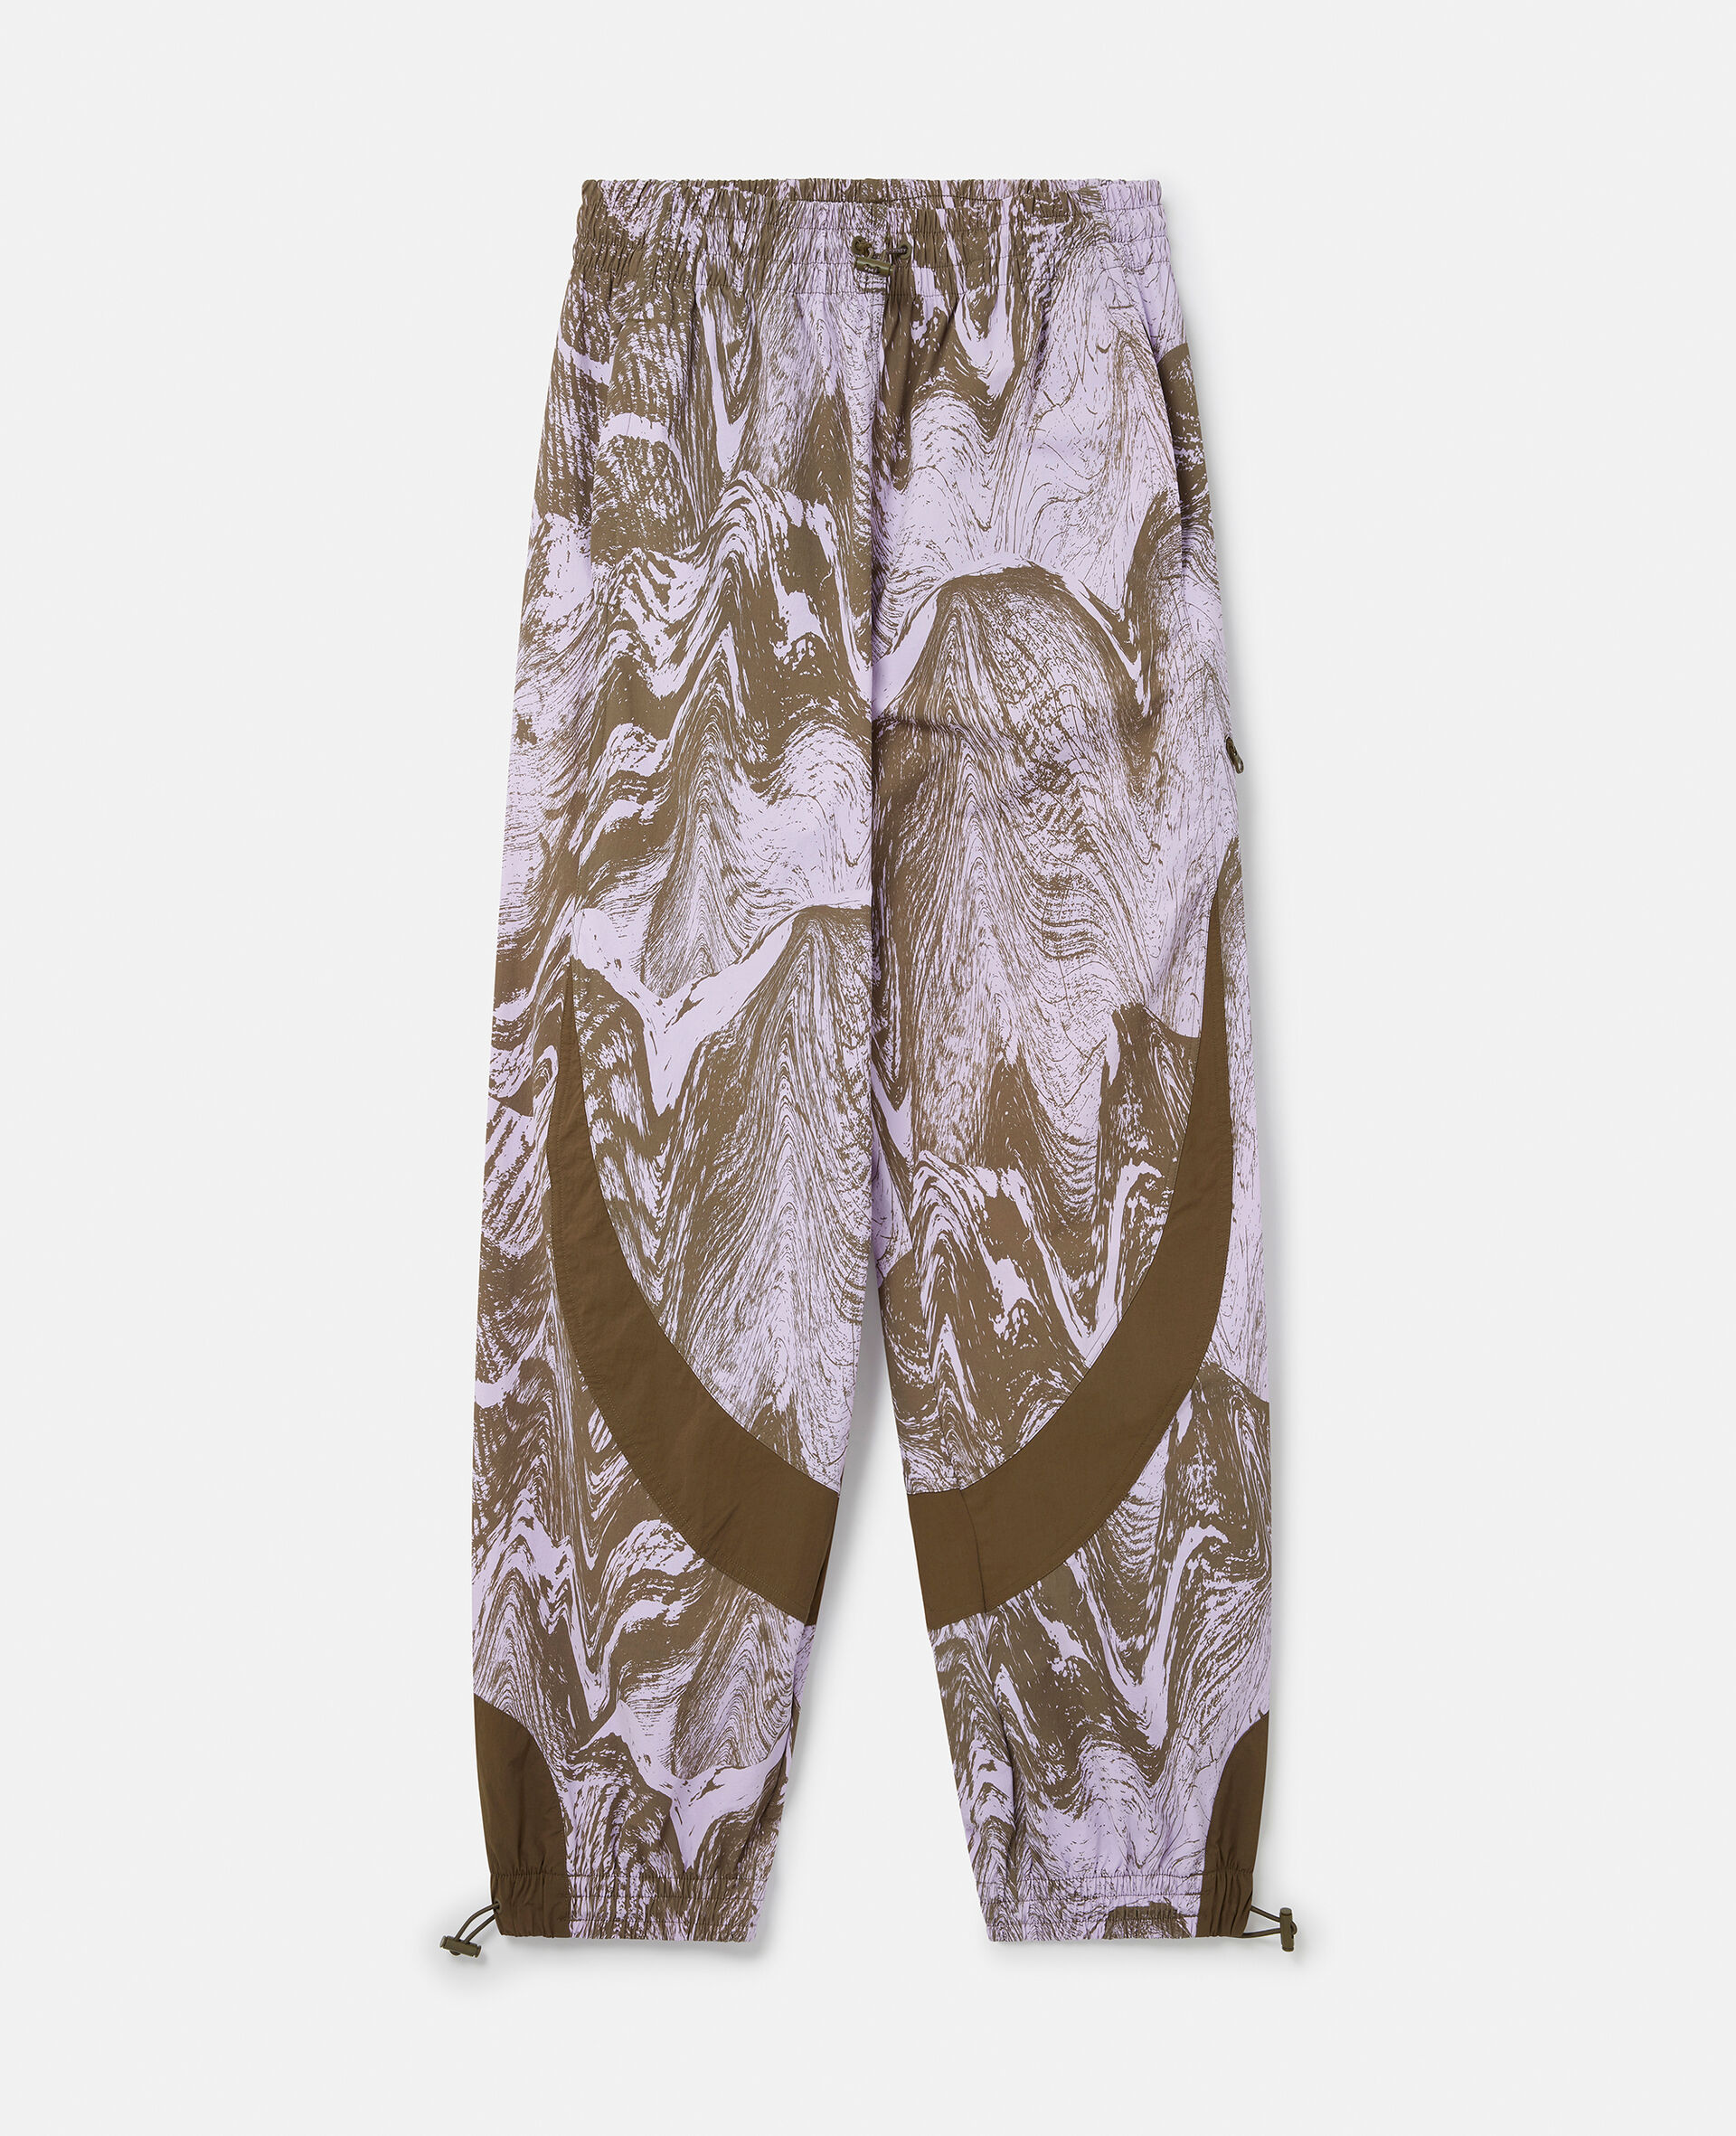 Pantalon de survêtement tissé à imprimé bois moiré-Fantaisie-medium